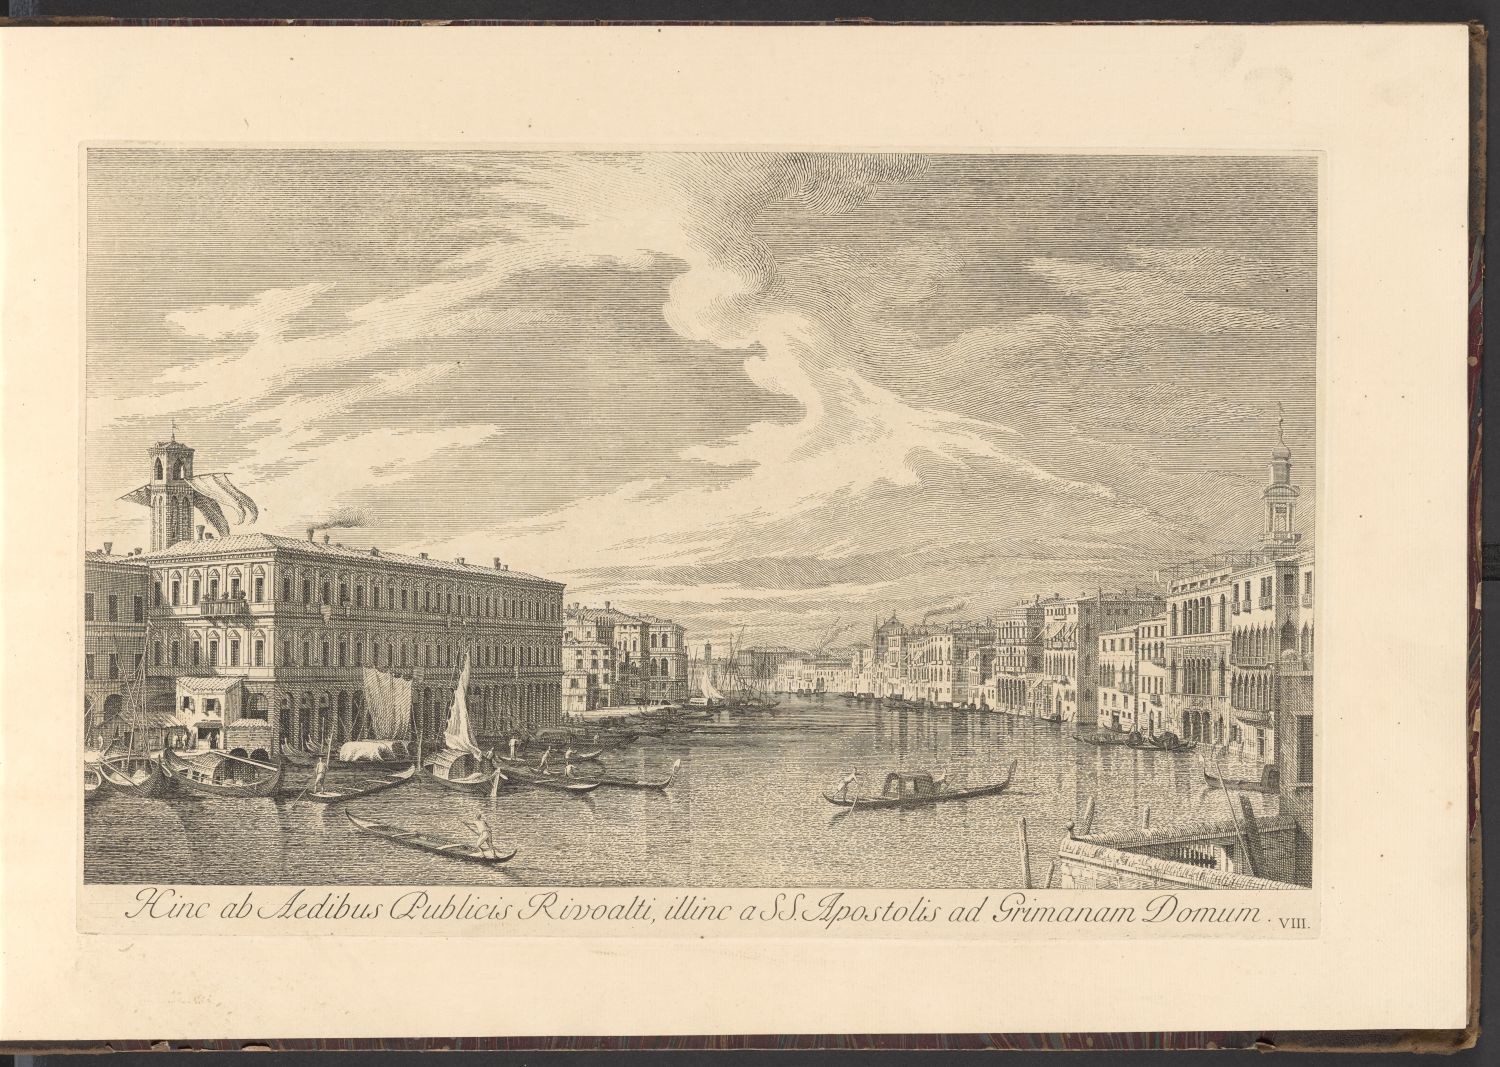 Venedig, VIII. Hinc ad Aedibus Publicis Rivoalti, illinc a SS. Apostolis ad Grimanam Domum. (Stiftung Händelhaus, Halle CC BY-NC-SA)